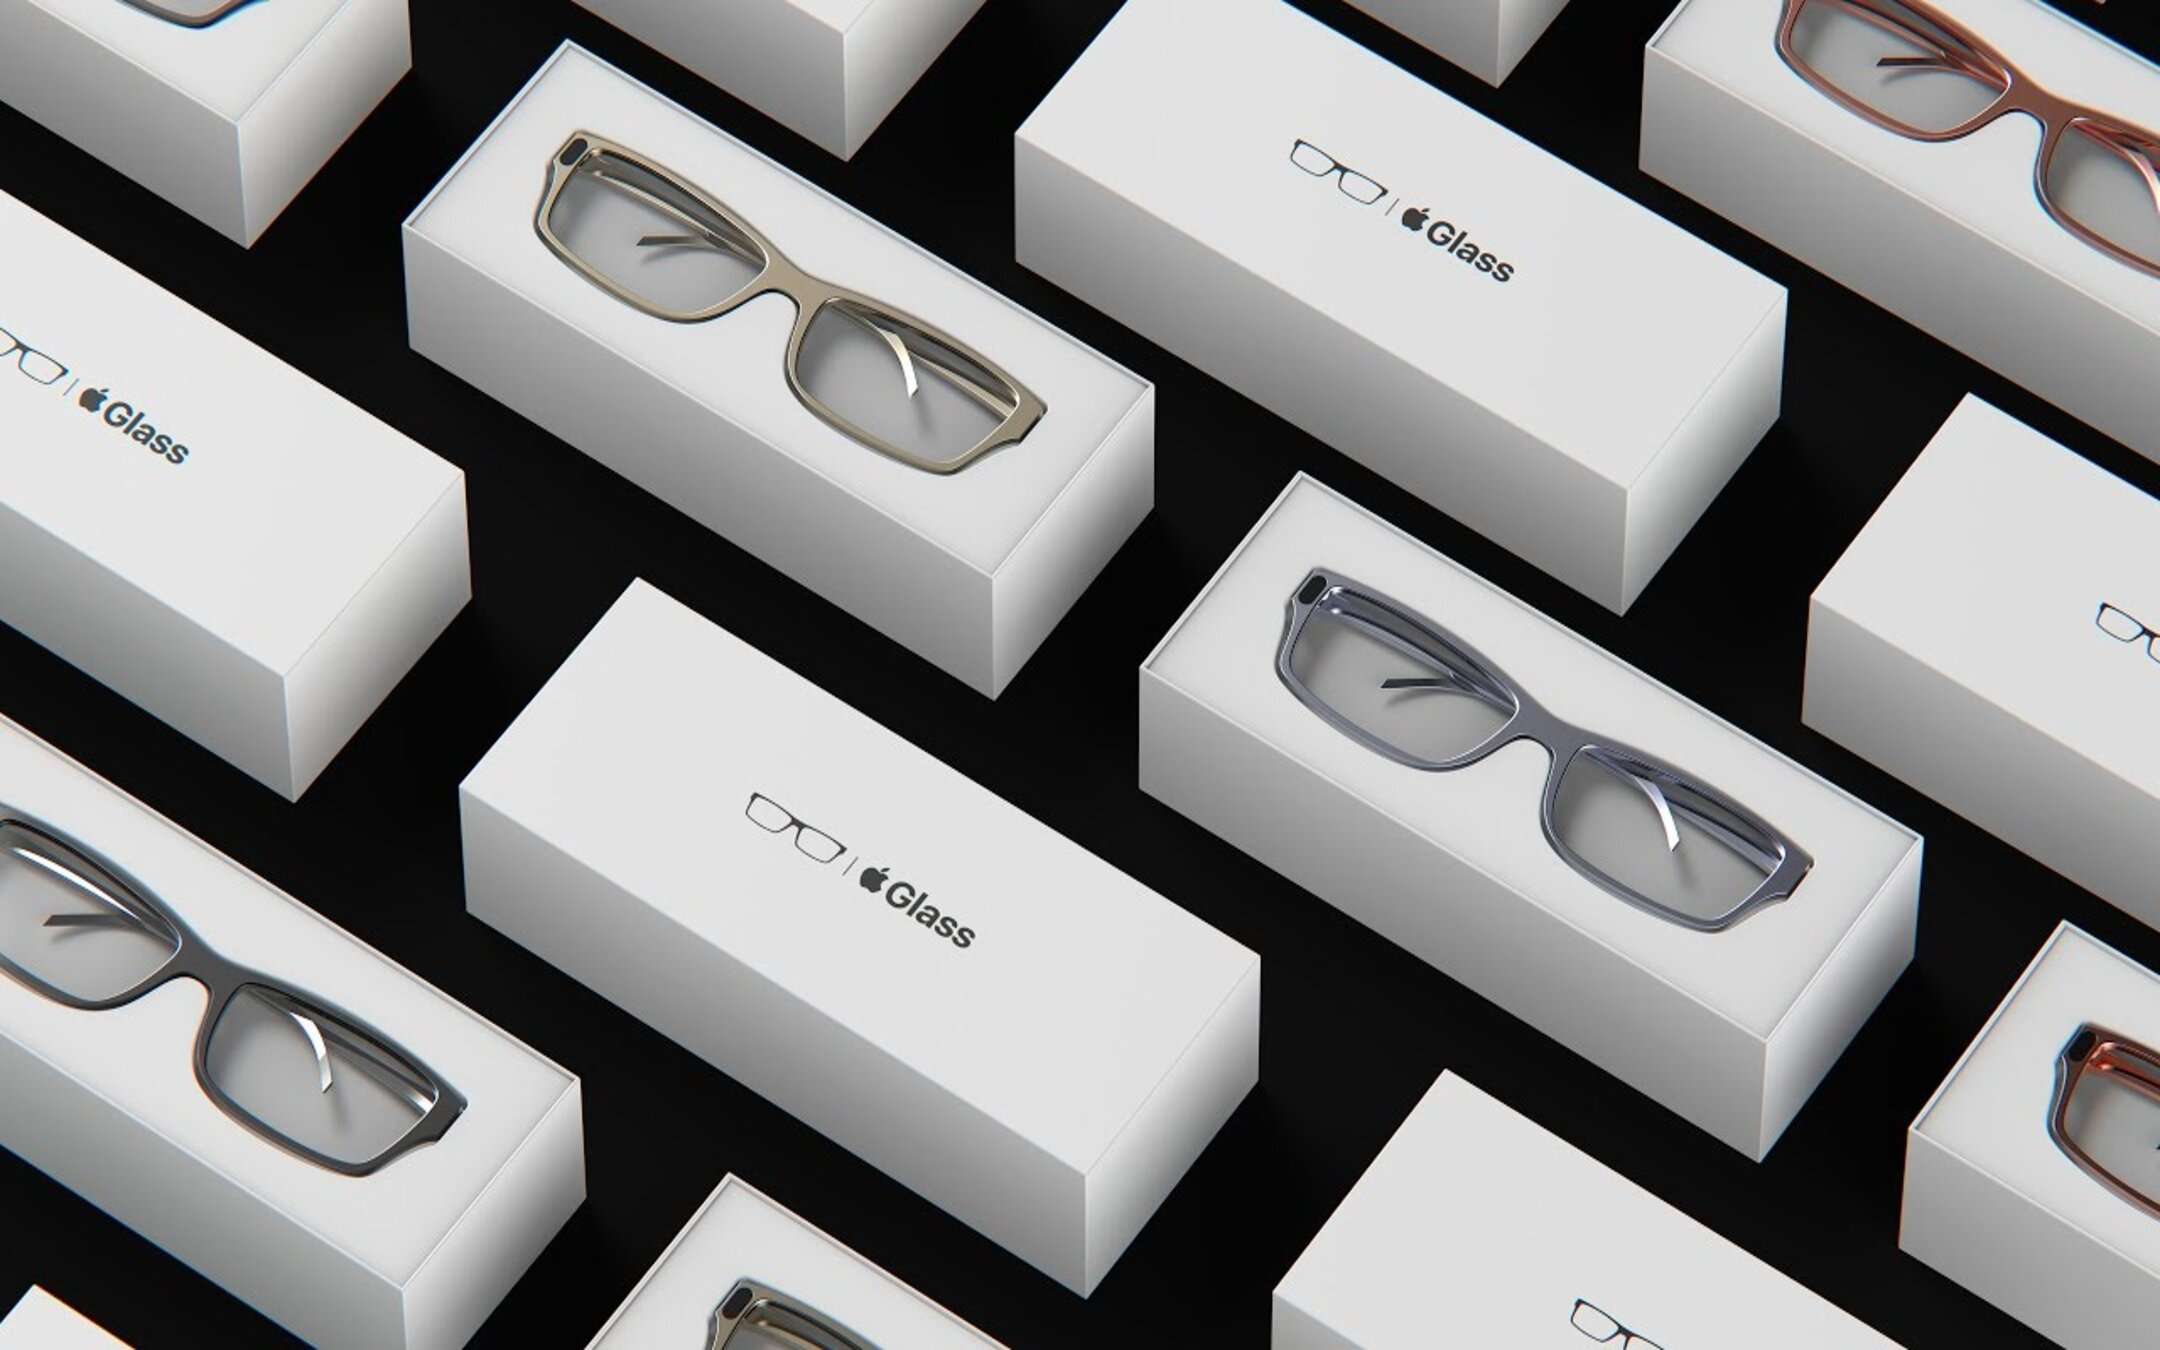 Apple Glass a supporto della privacy degli utenti?